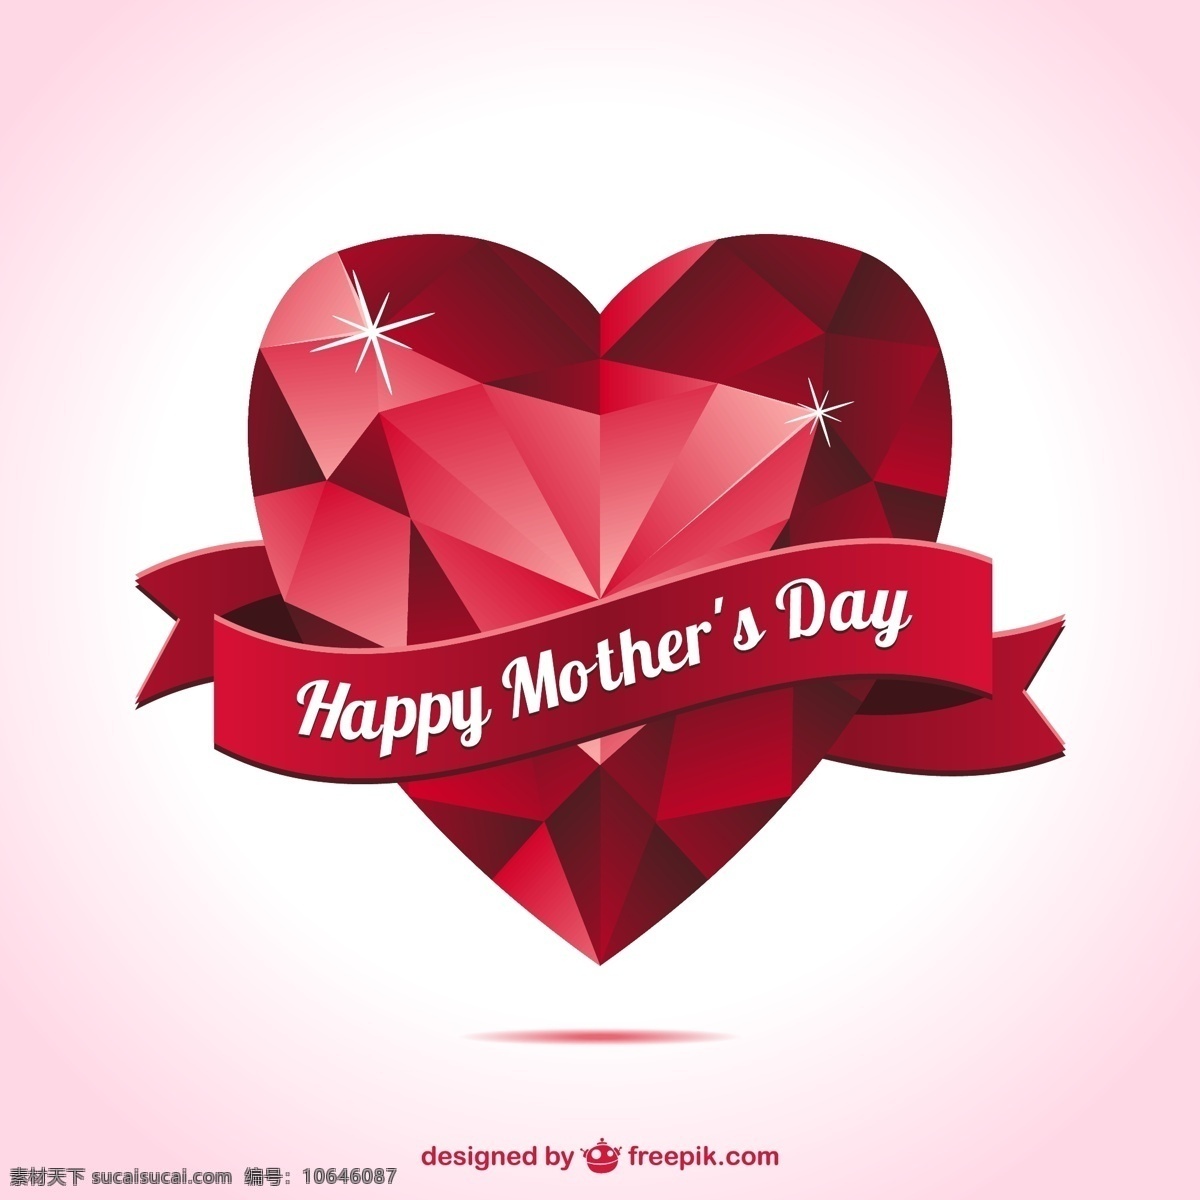 母亲节 心形 卡片 背景 海报 心脏 邀请 礼品 模板 钻石 快乐 红色 艺术 母亲 图形 红色背景 布局 平面设计 白色